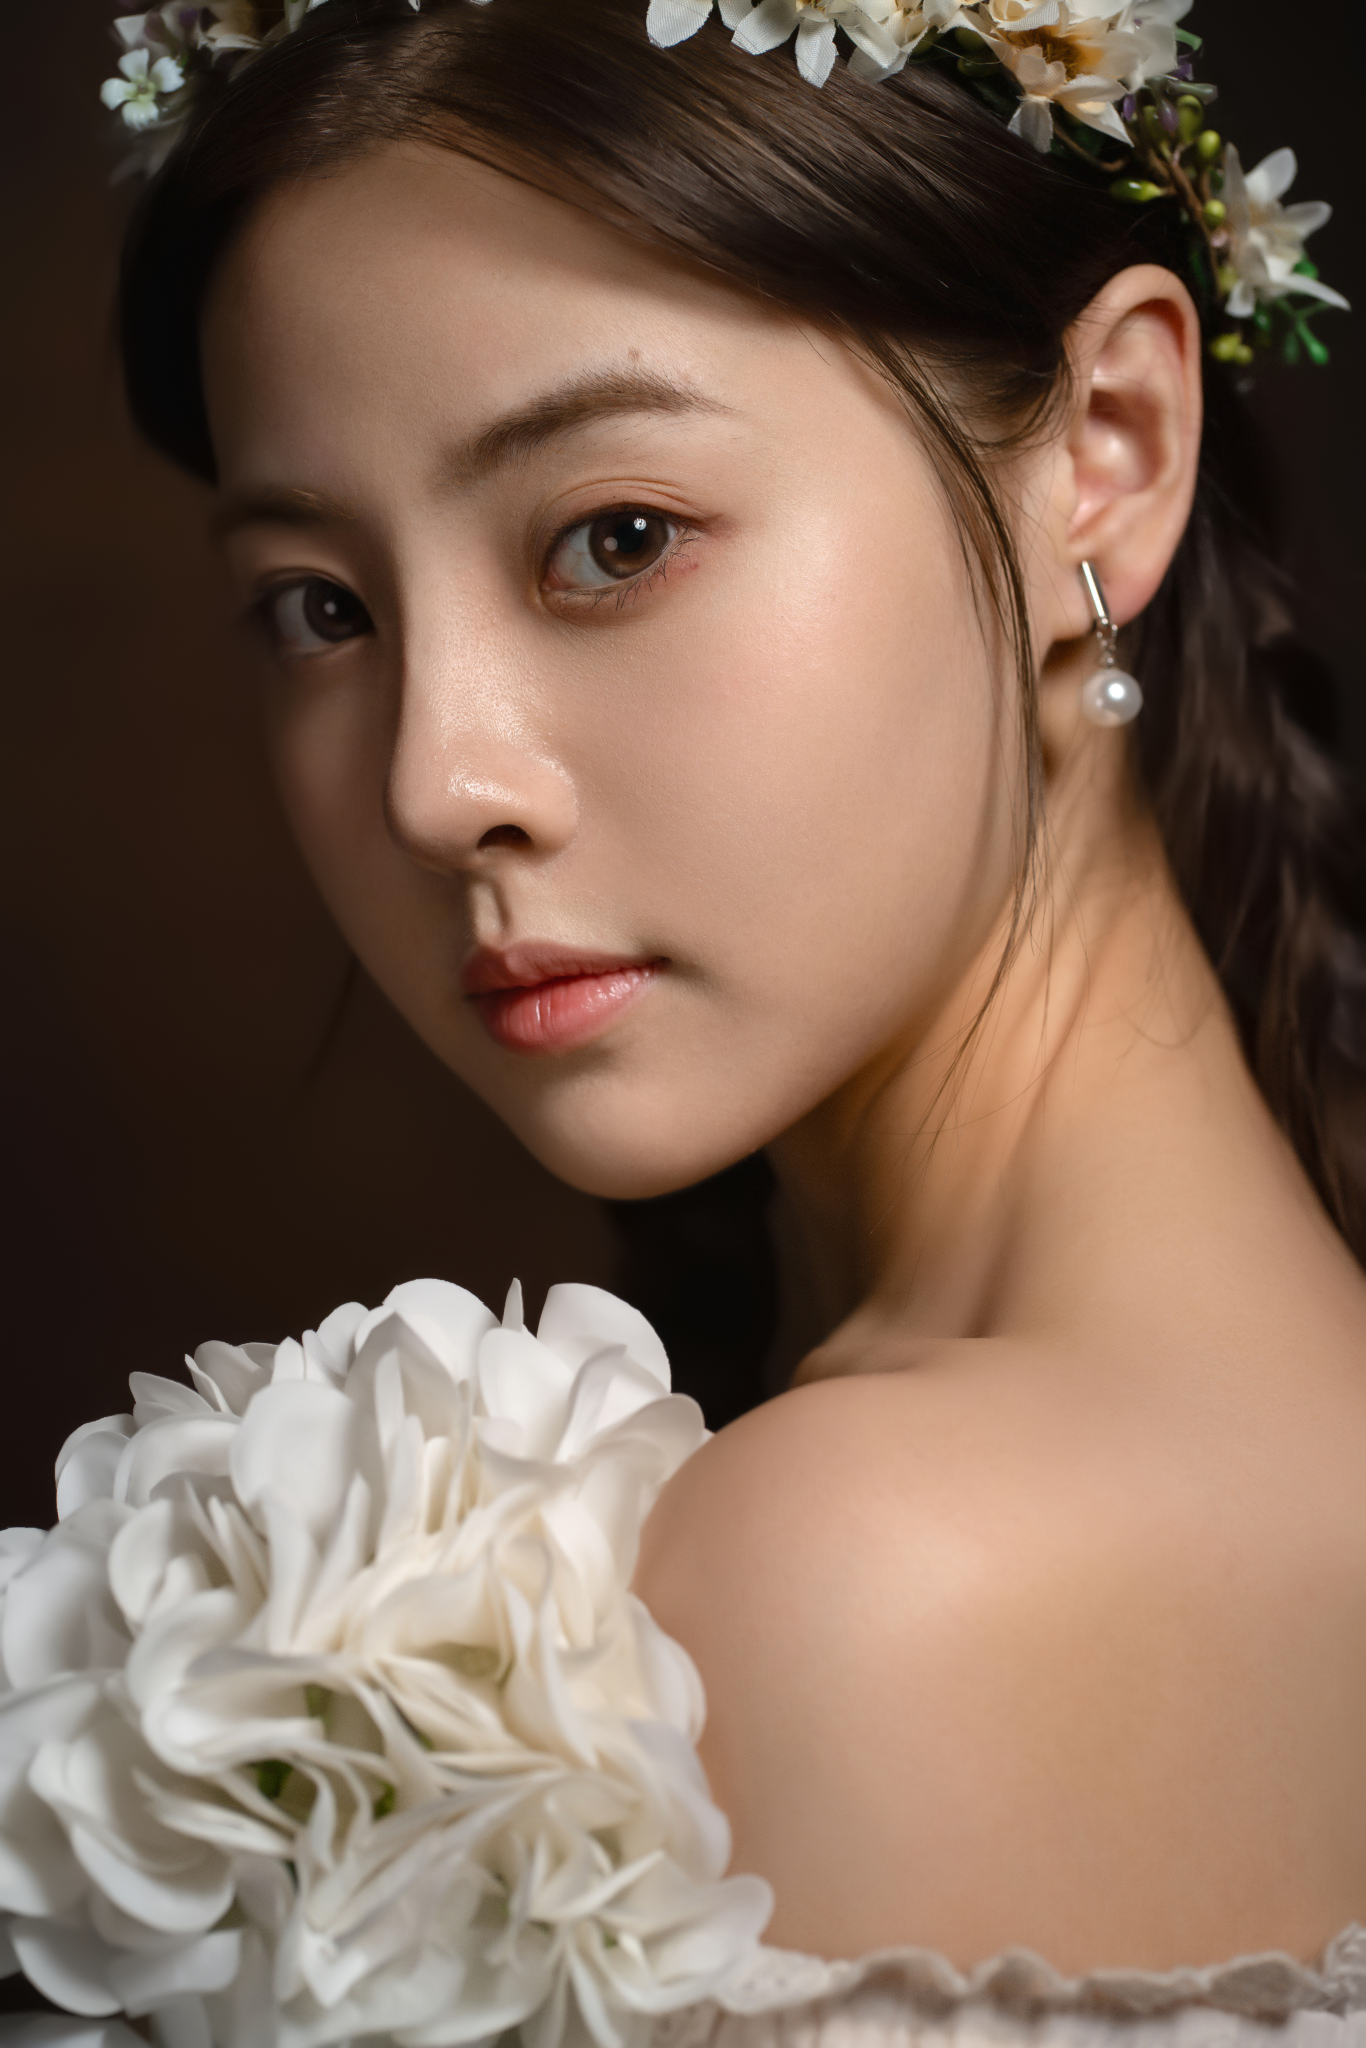 Lee Hu Women Portrait Flower Crown Asian Flowers Model Brunette Brown Eyes Bare Shoulders Studio 1366x2048